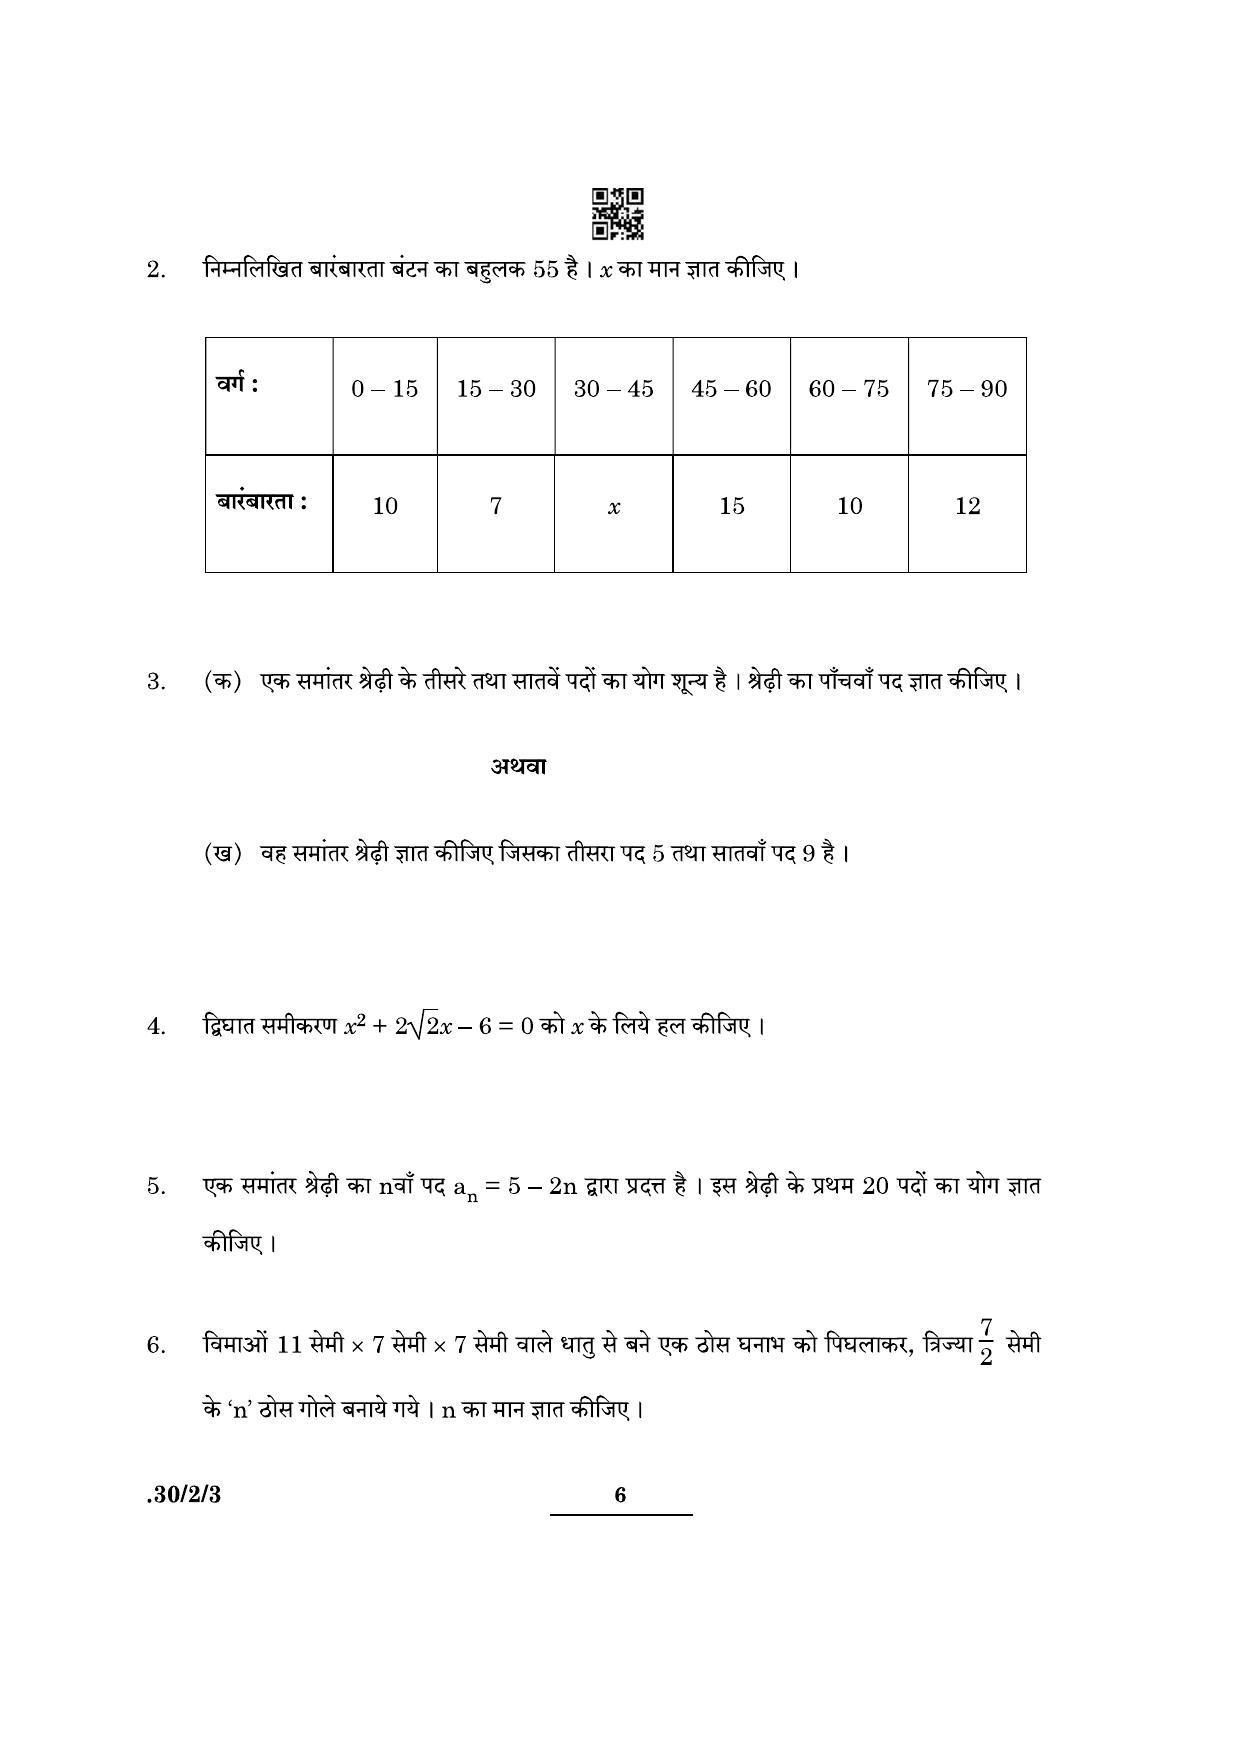 CBSE Class 10 Maths (30/2/3 - SET III) 2022 Question Paper - Page 6